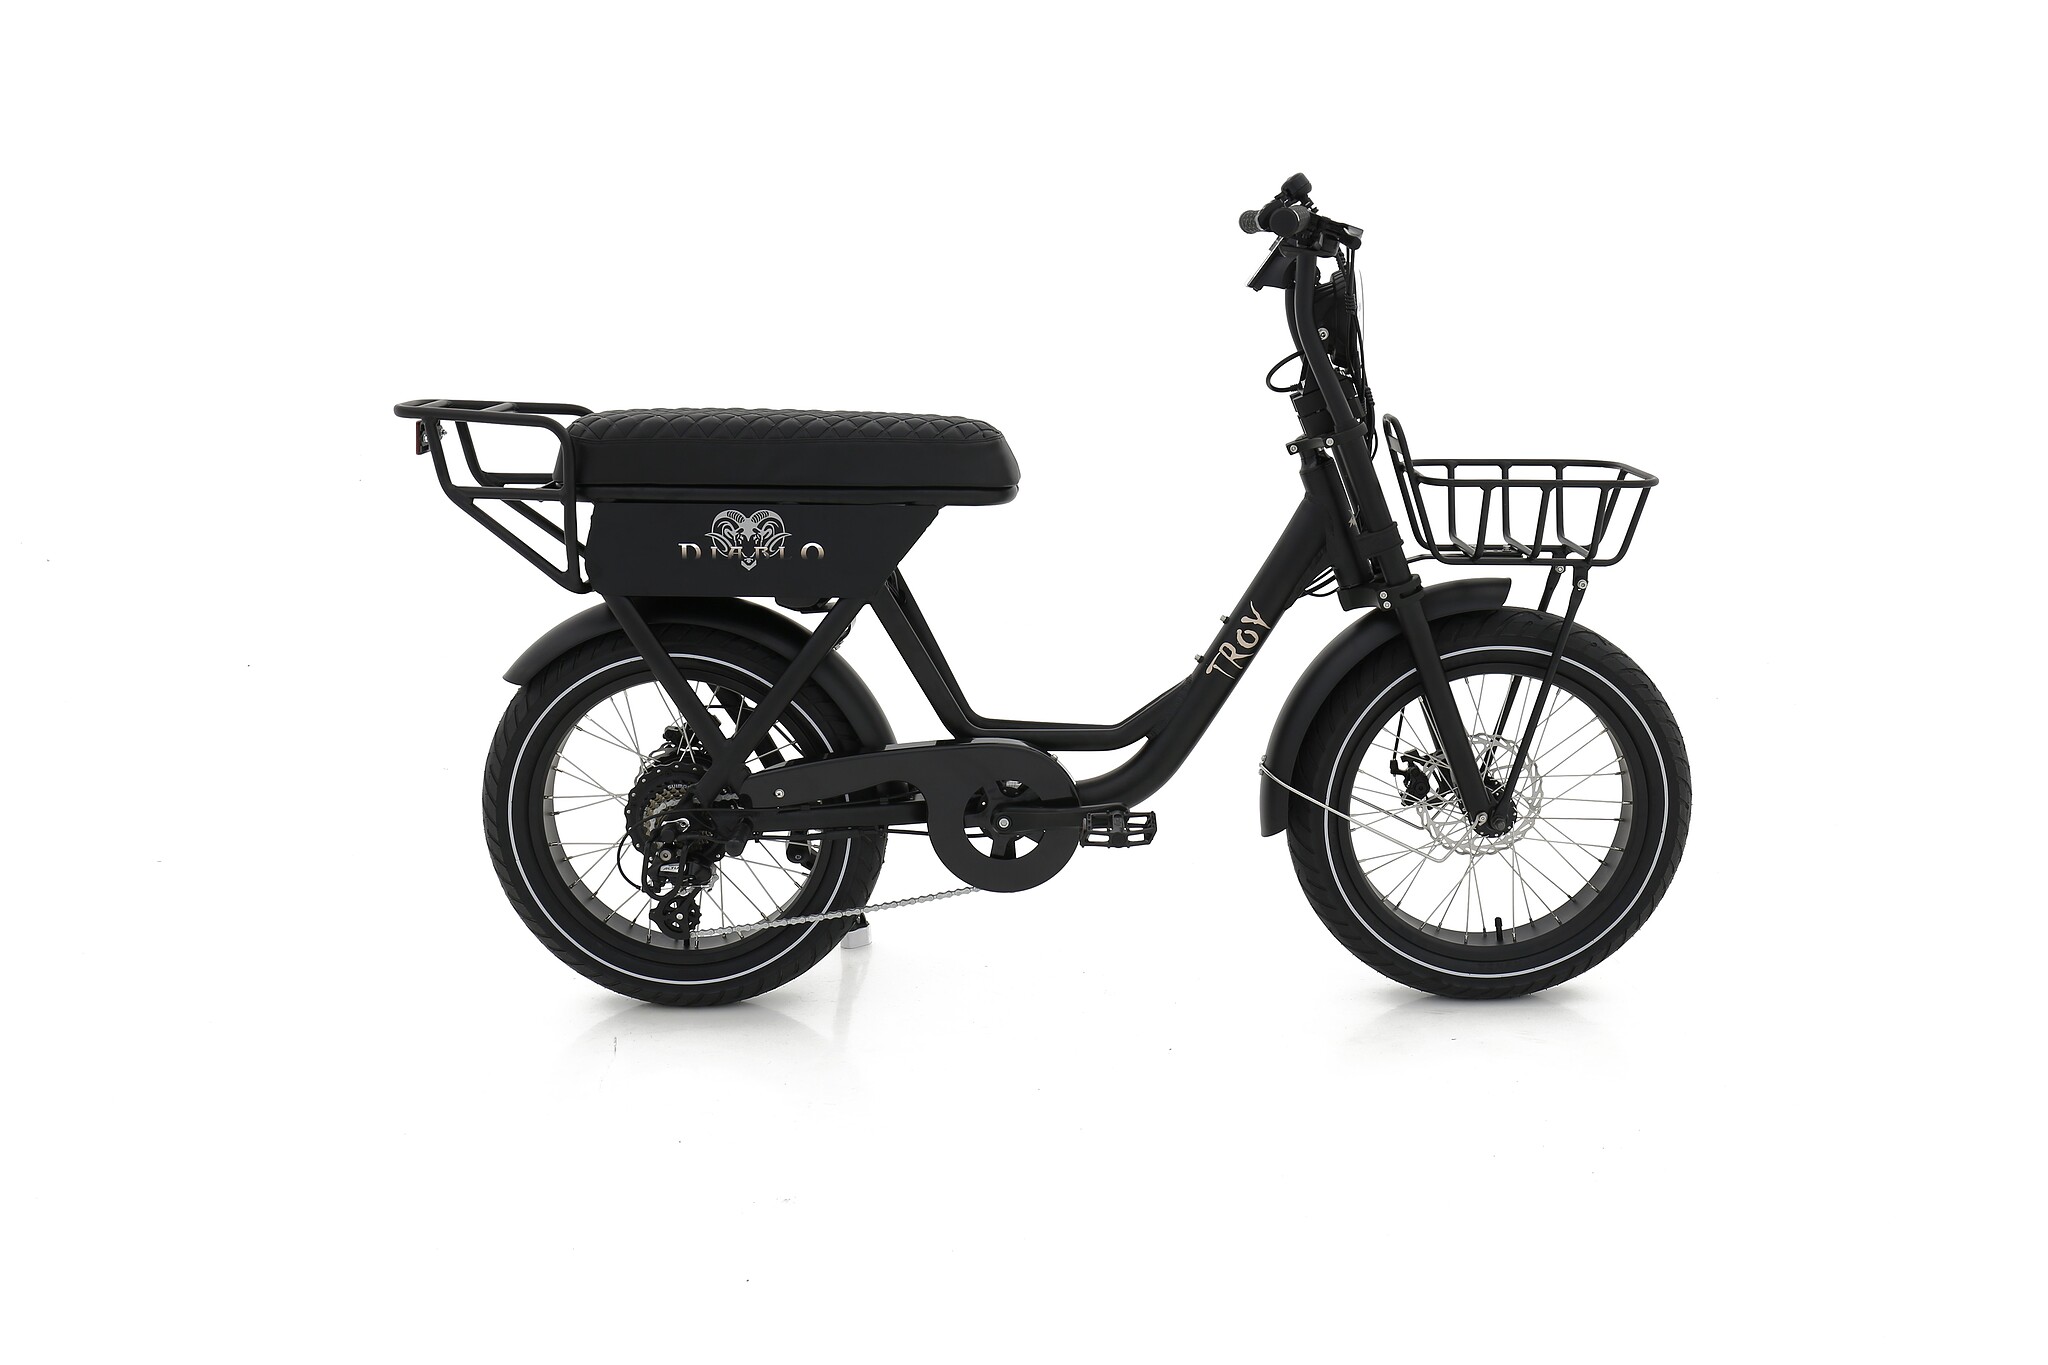 Troy elektrische fiets Diablo 7 speed mat zwart Mat zwart